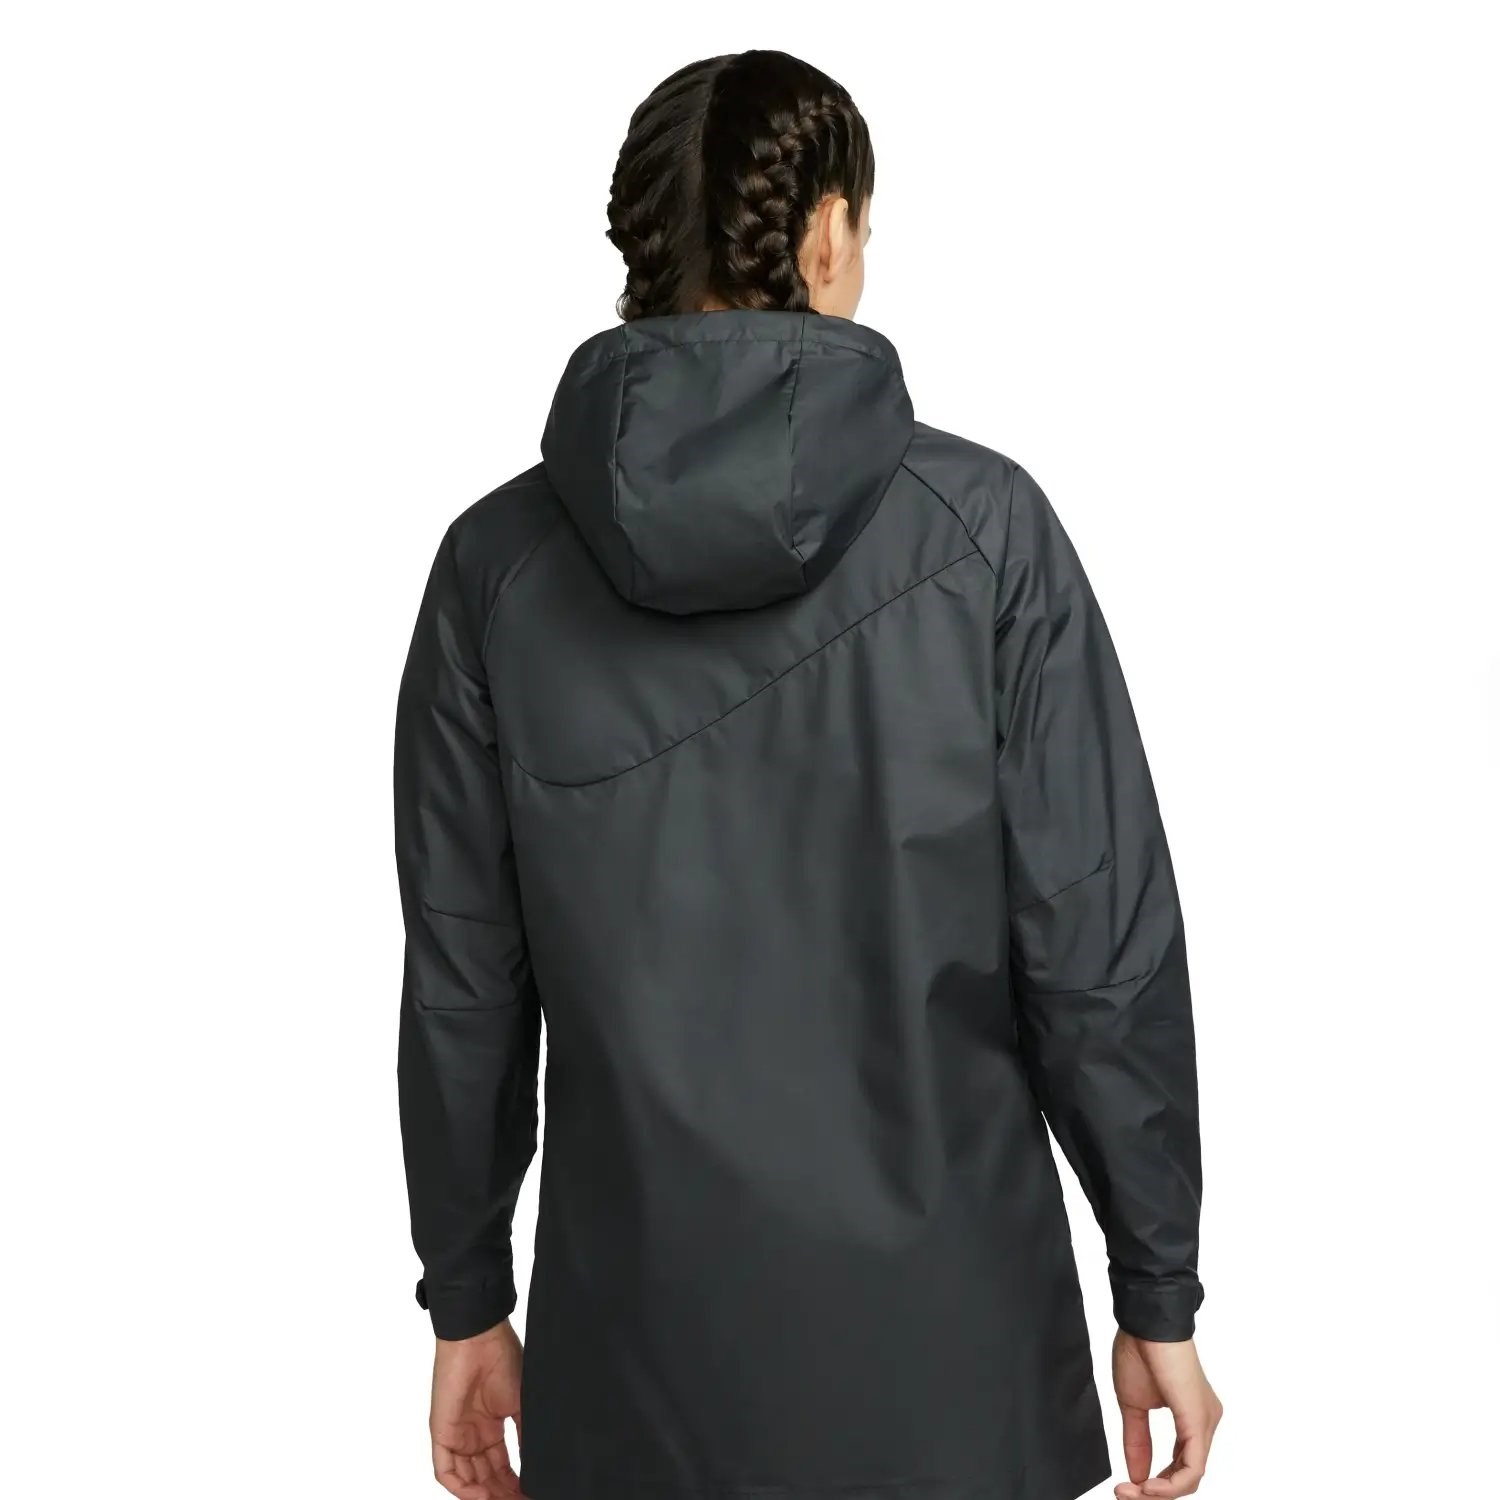 Nike Storm-FIT Academy Pro Kadın Yağmurluk Siyah